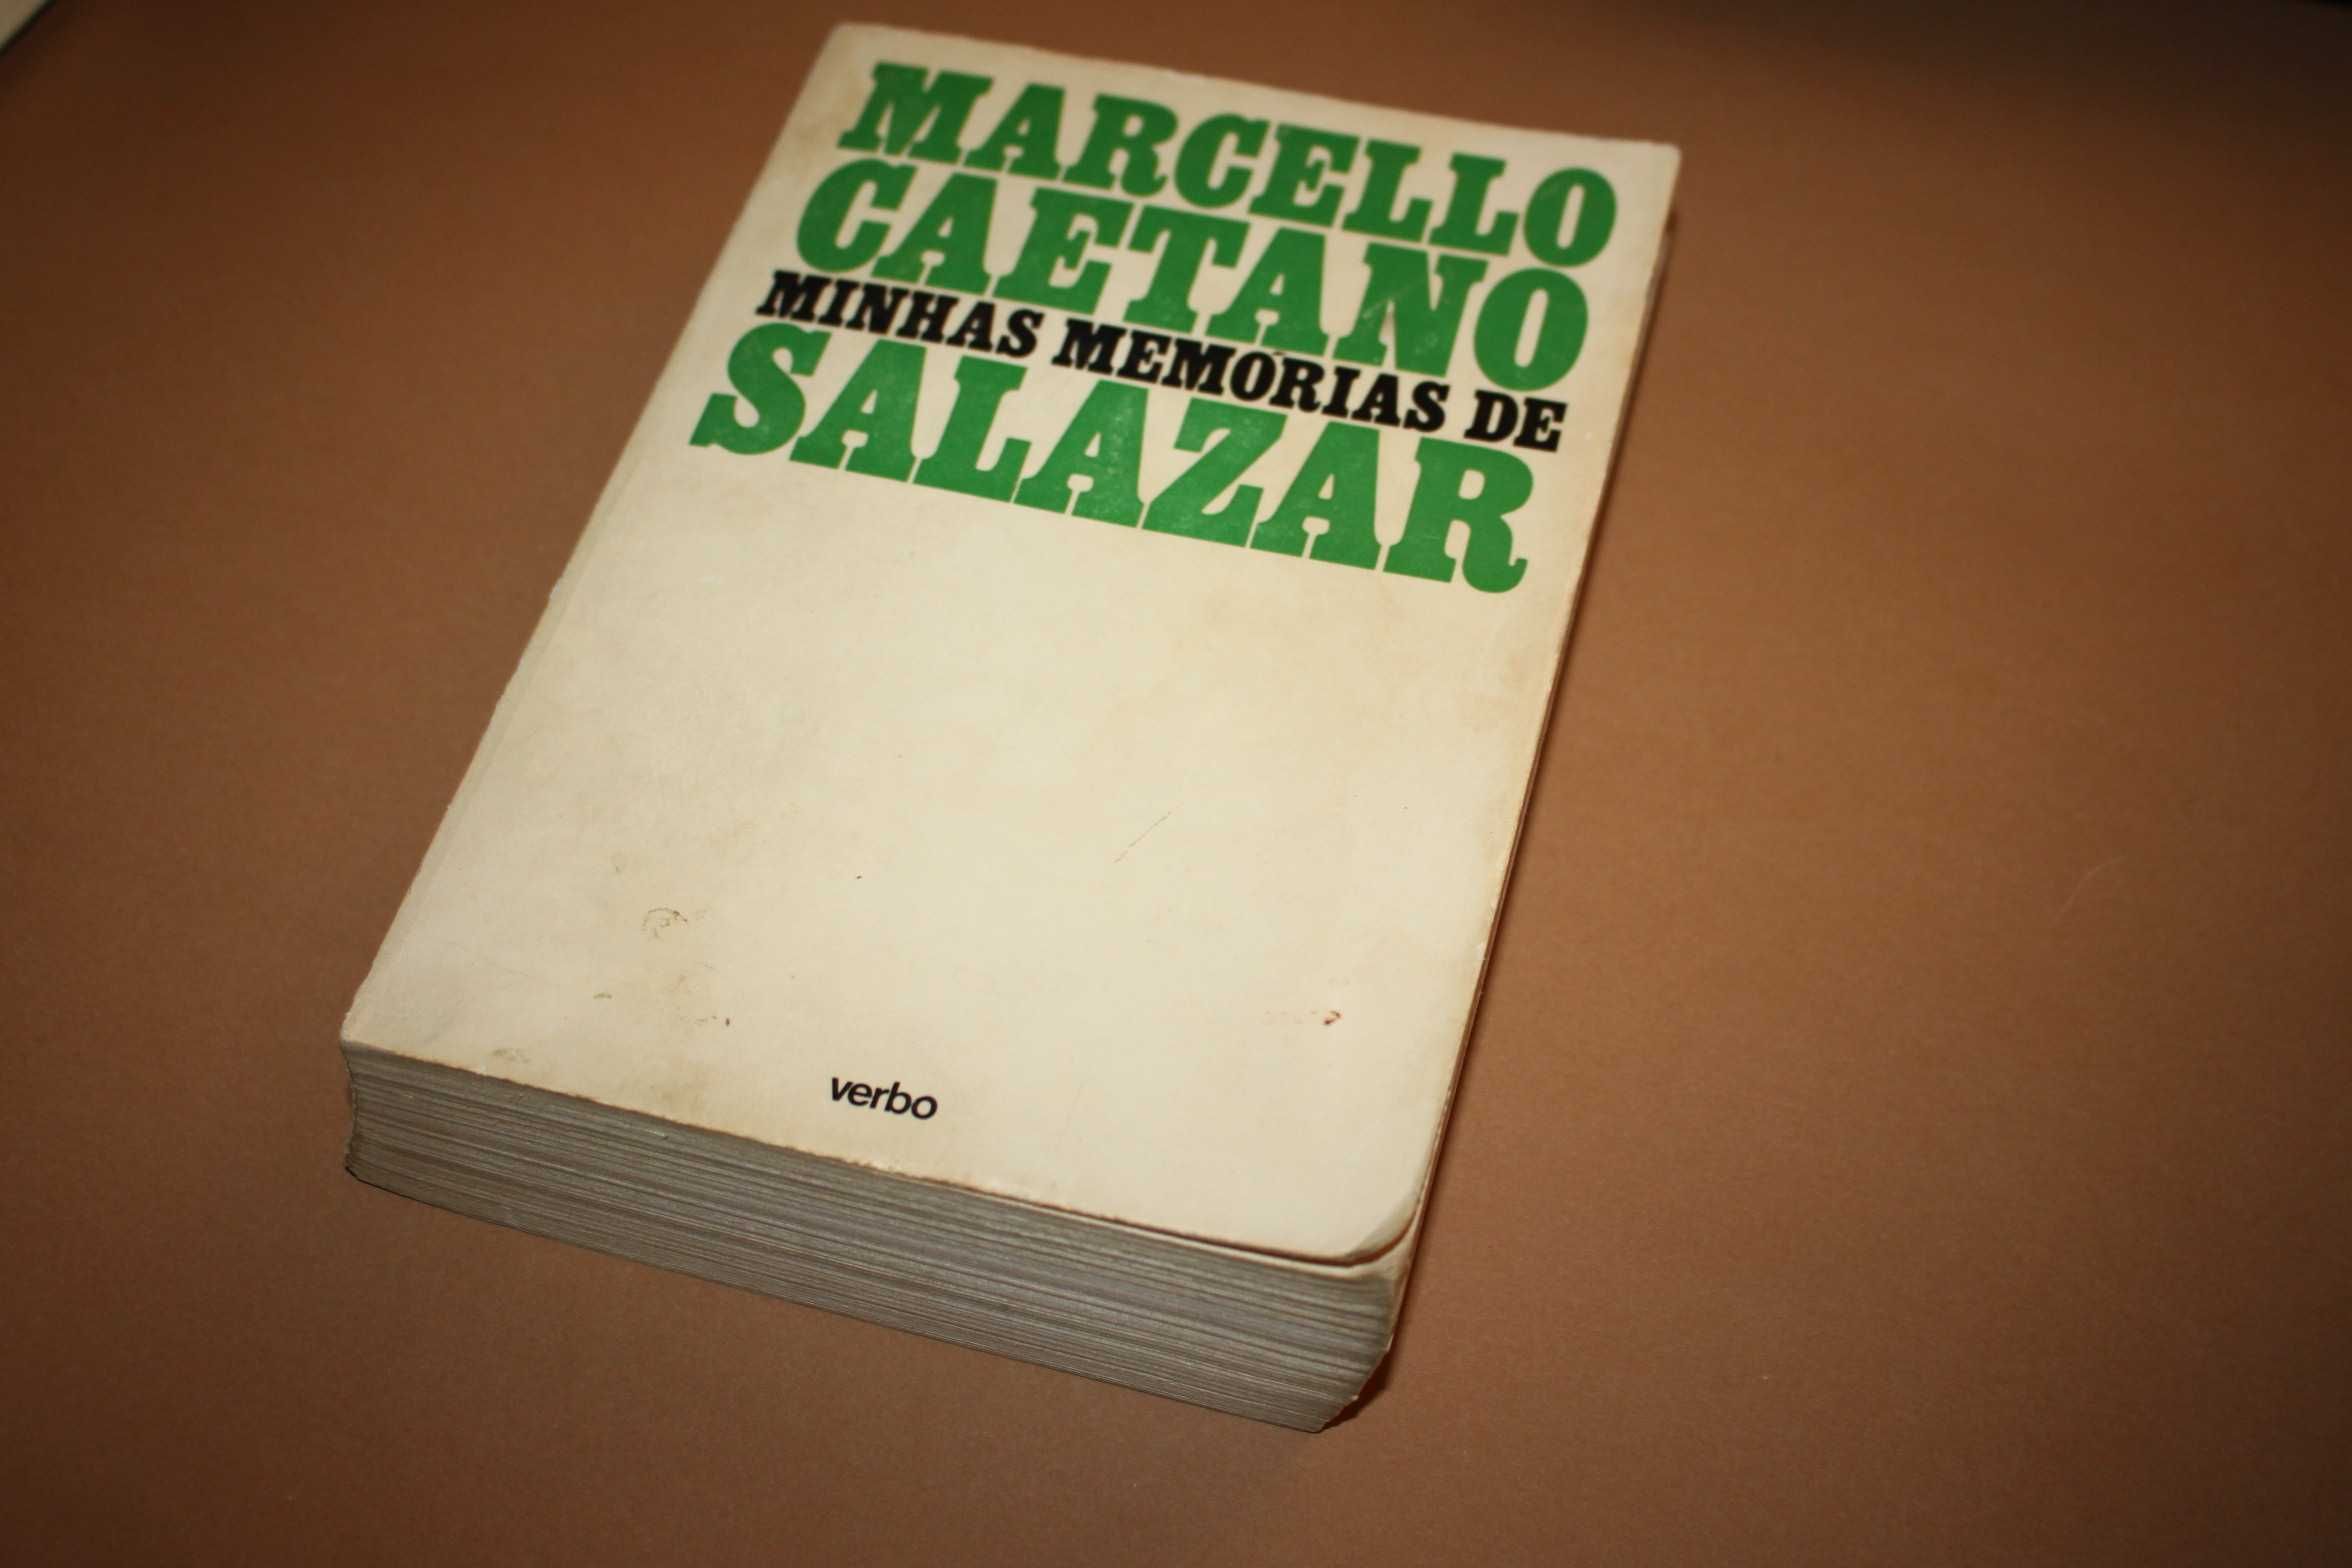 Minhas memórias de Salazar // Marcello Caetano